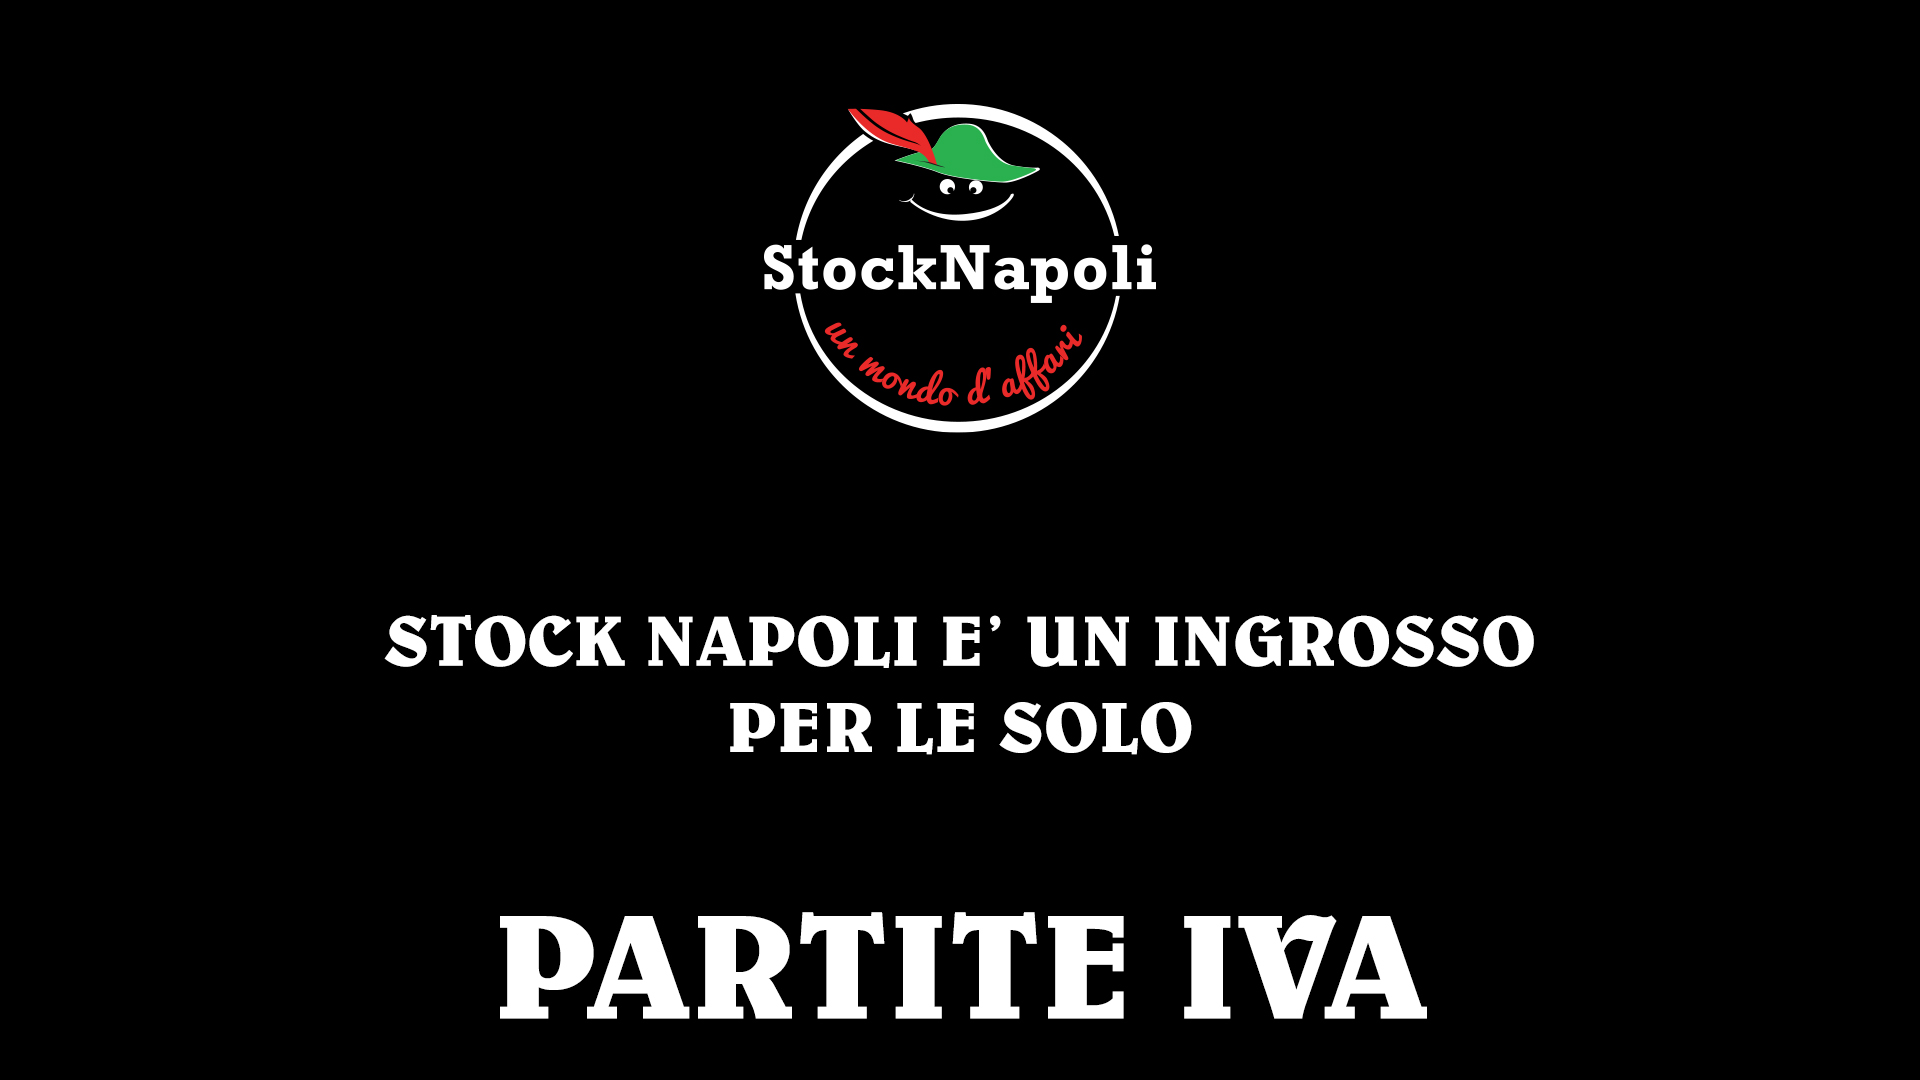 STOCK NAPOLI SOLO PER PARTITA IVA